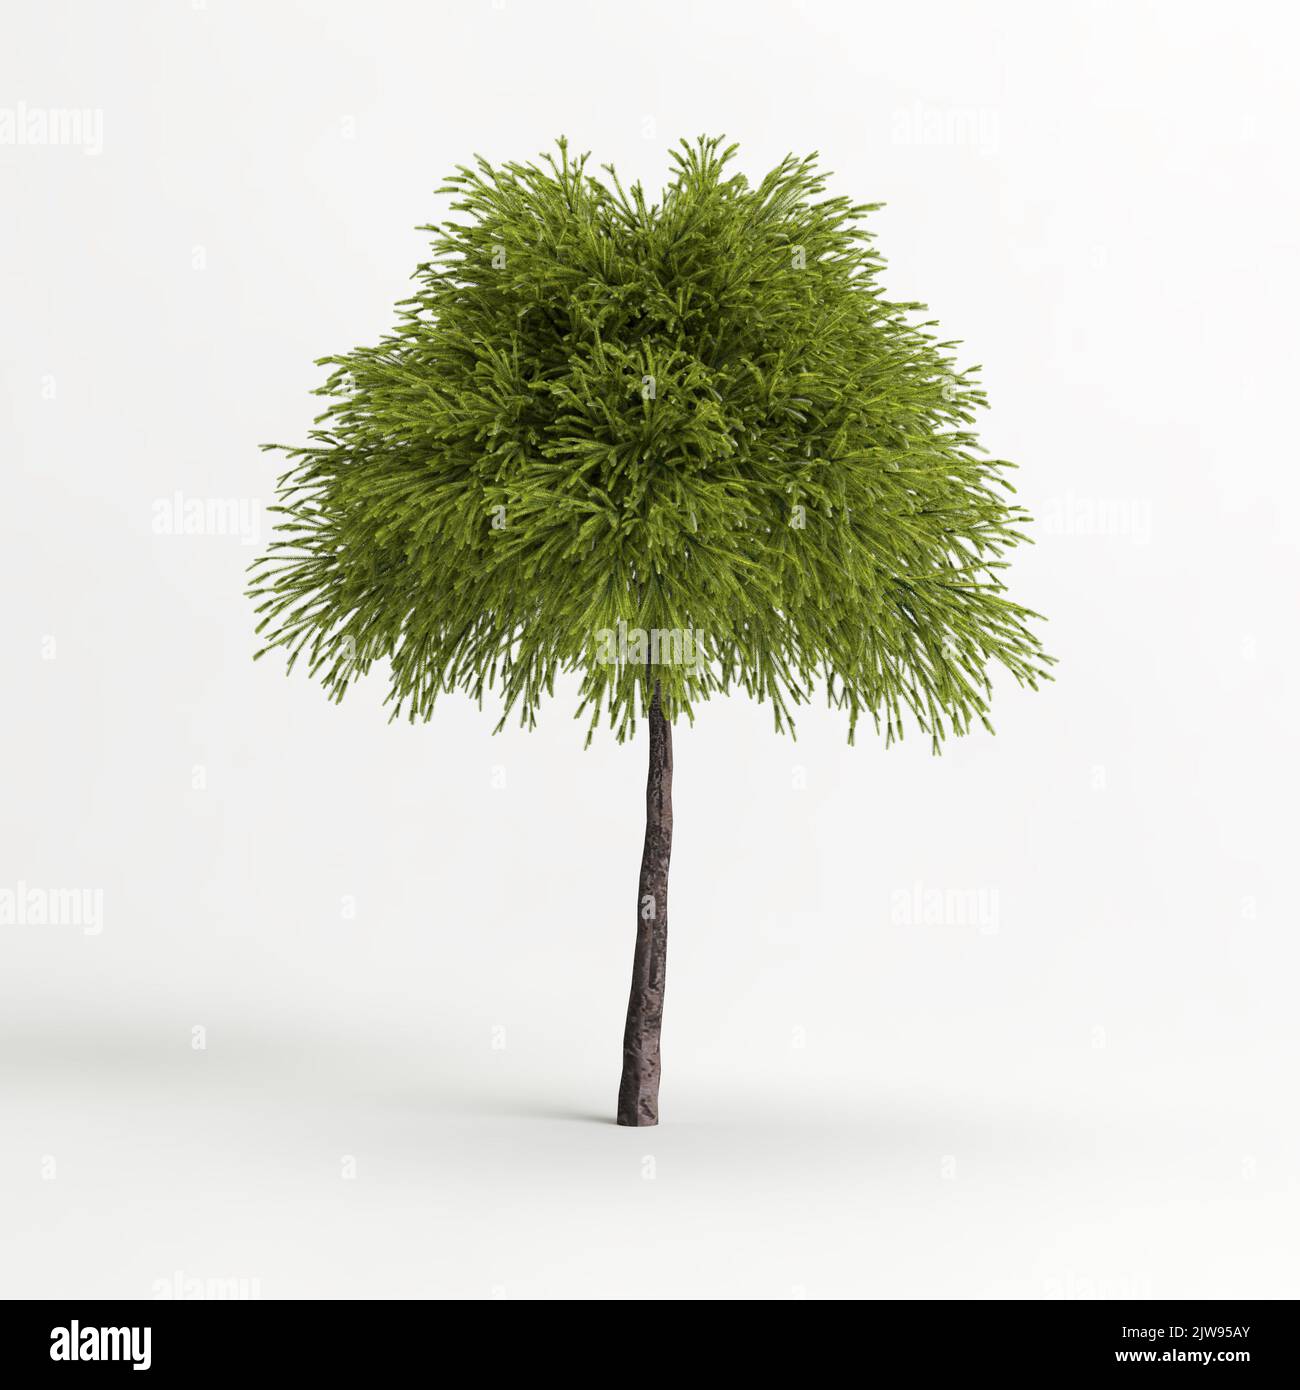 3d illustration of cryptomeria japonica globosa nana tree isolated on white background Stock Photo